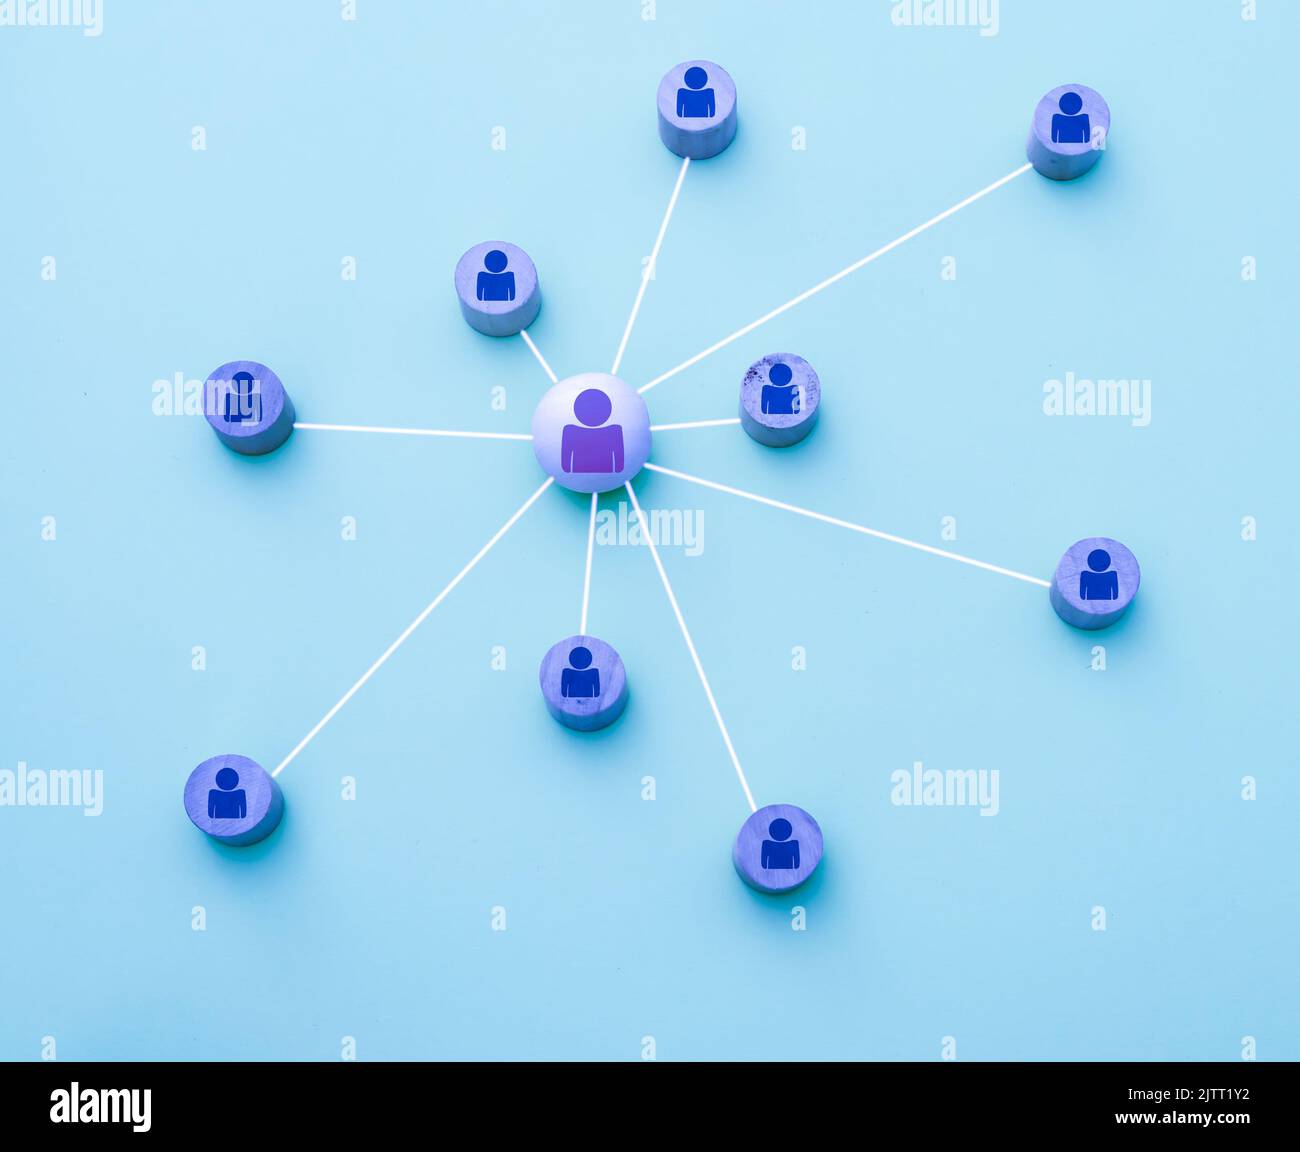 Darstellung mit 3D Icons eines Netzwerks von Social-Media-Kontakten auf blauem Hintergrund Stockfoto